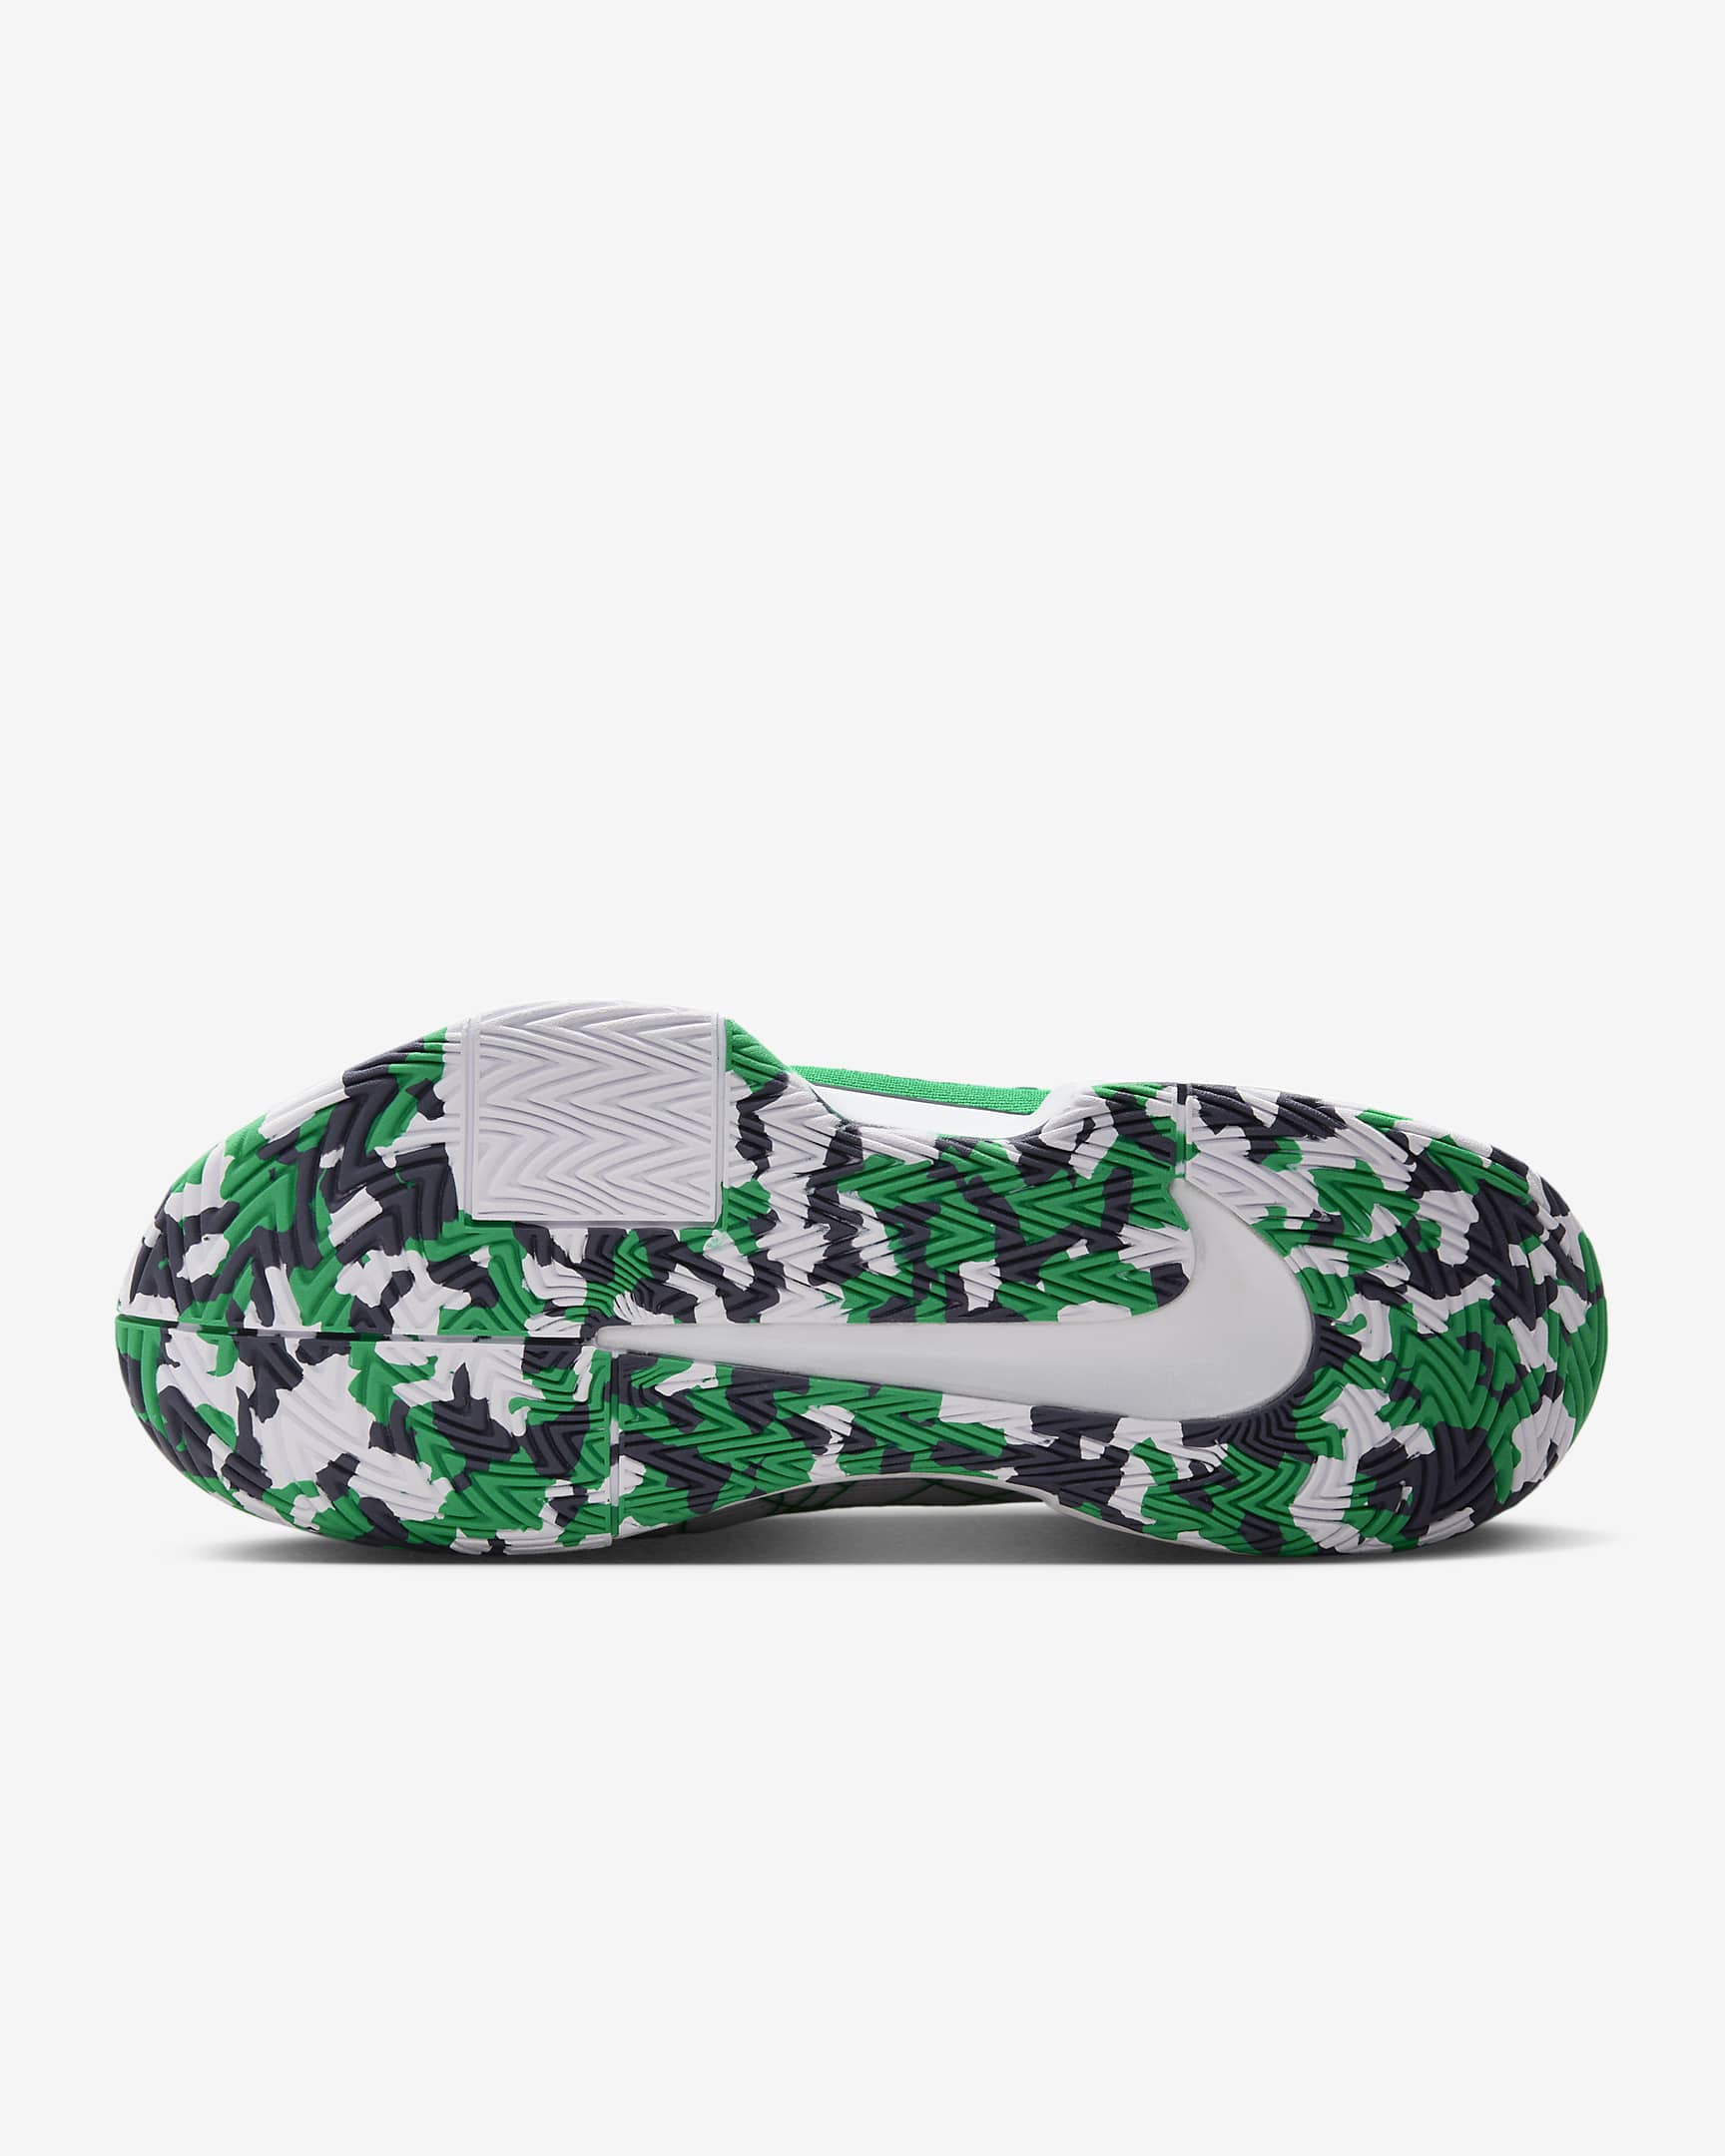 Nike Zoom Challenge Men's Pickleball Shoes - White/Thunder Blue/Black/Stadium Green